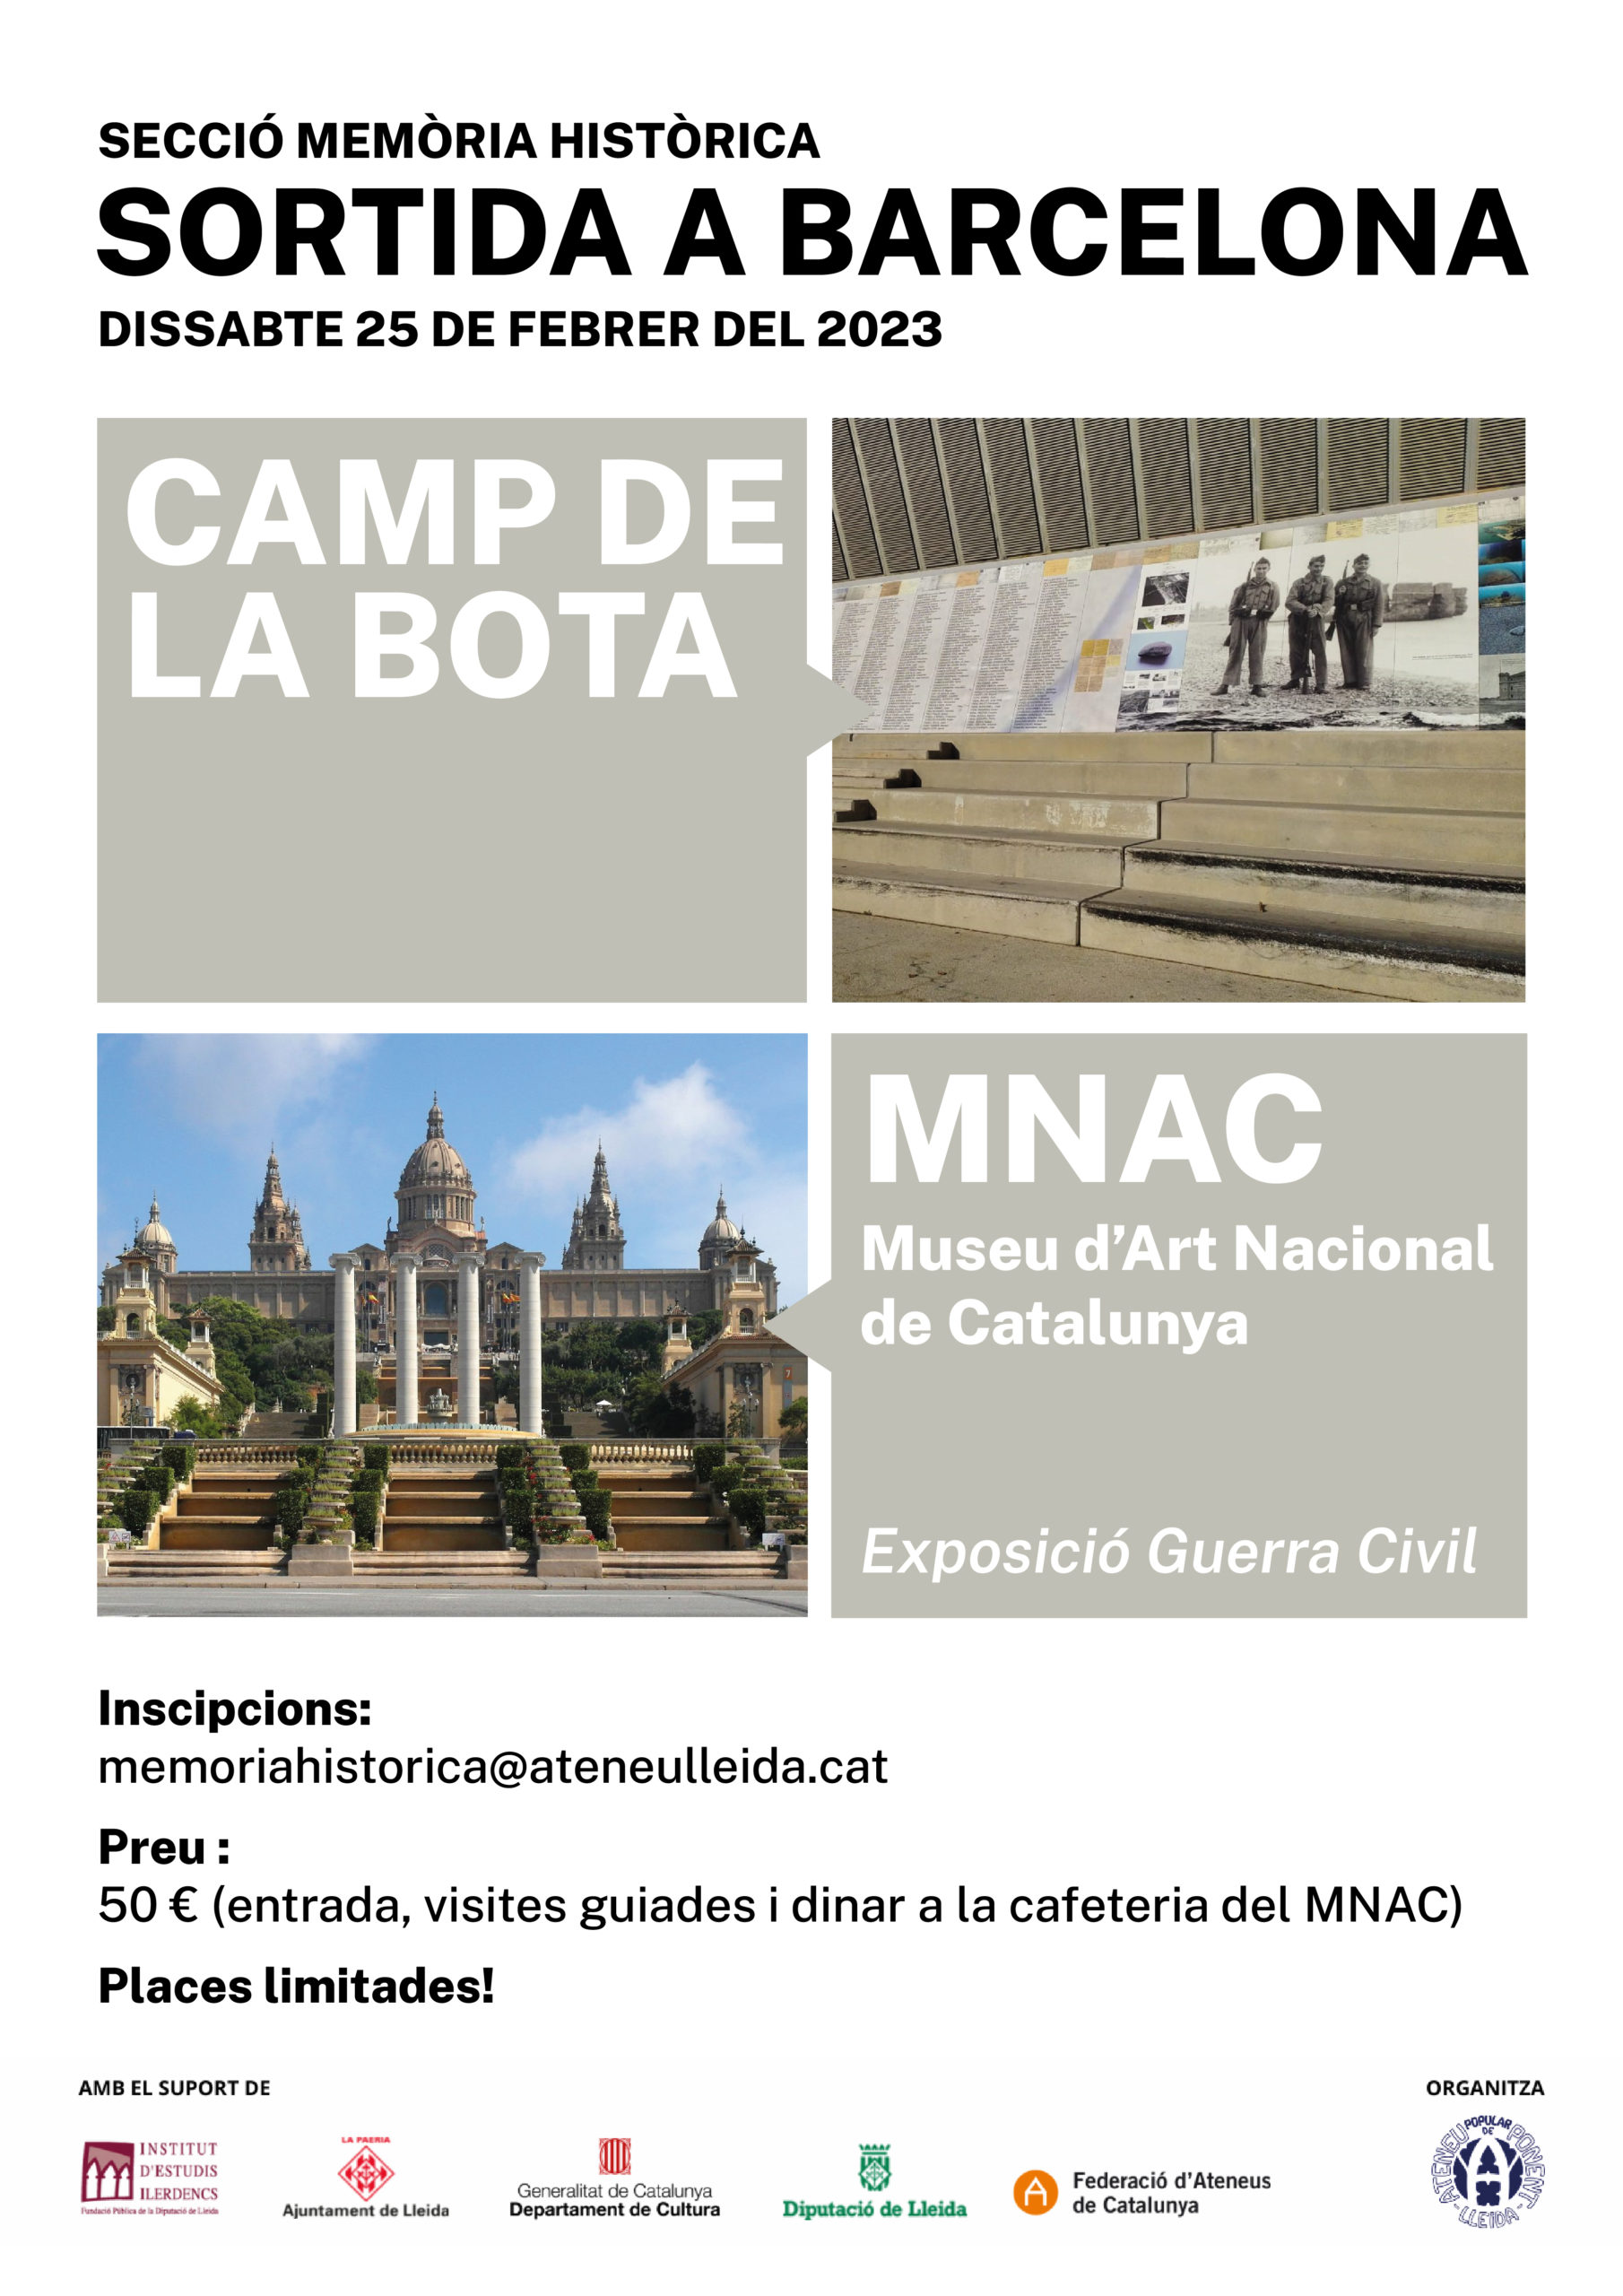 Sortida a Barcelona, dissabte 25 de febrer El Camp de la Bota i visita al Museu Nacional d’Art de Catalunya (MNAC)